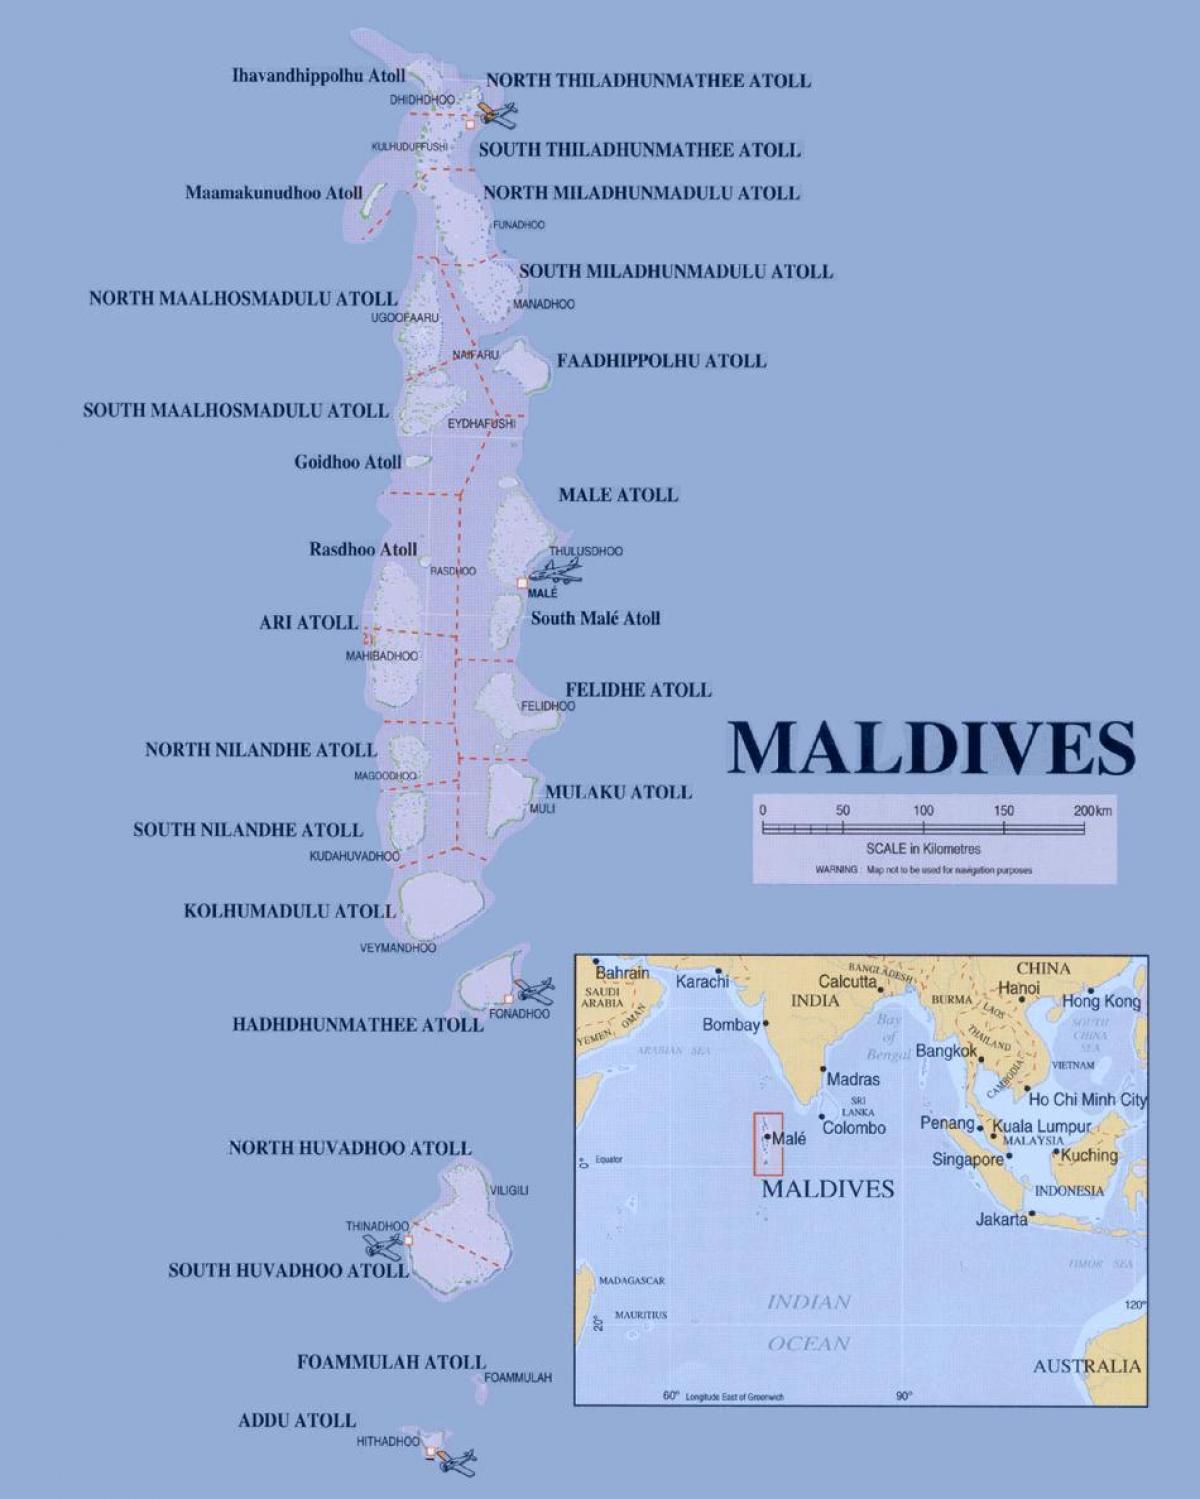 kat jeyografik ki montre maldiv